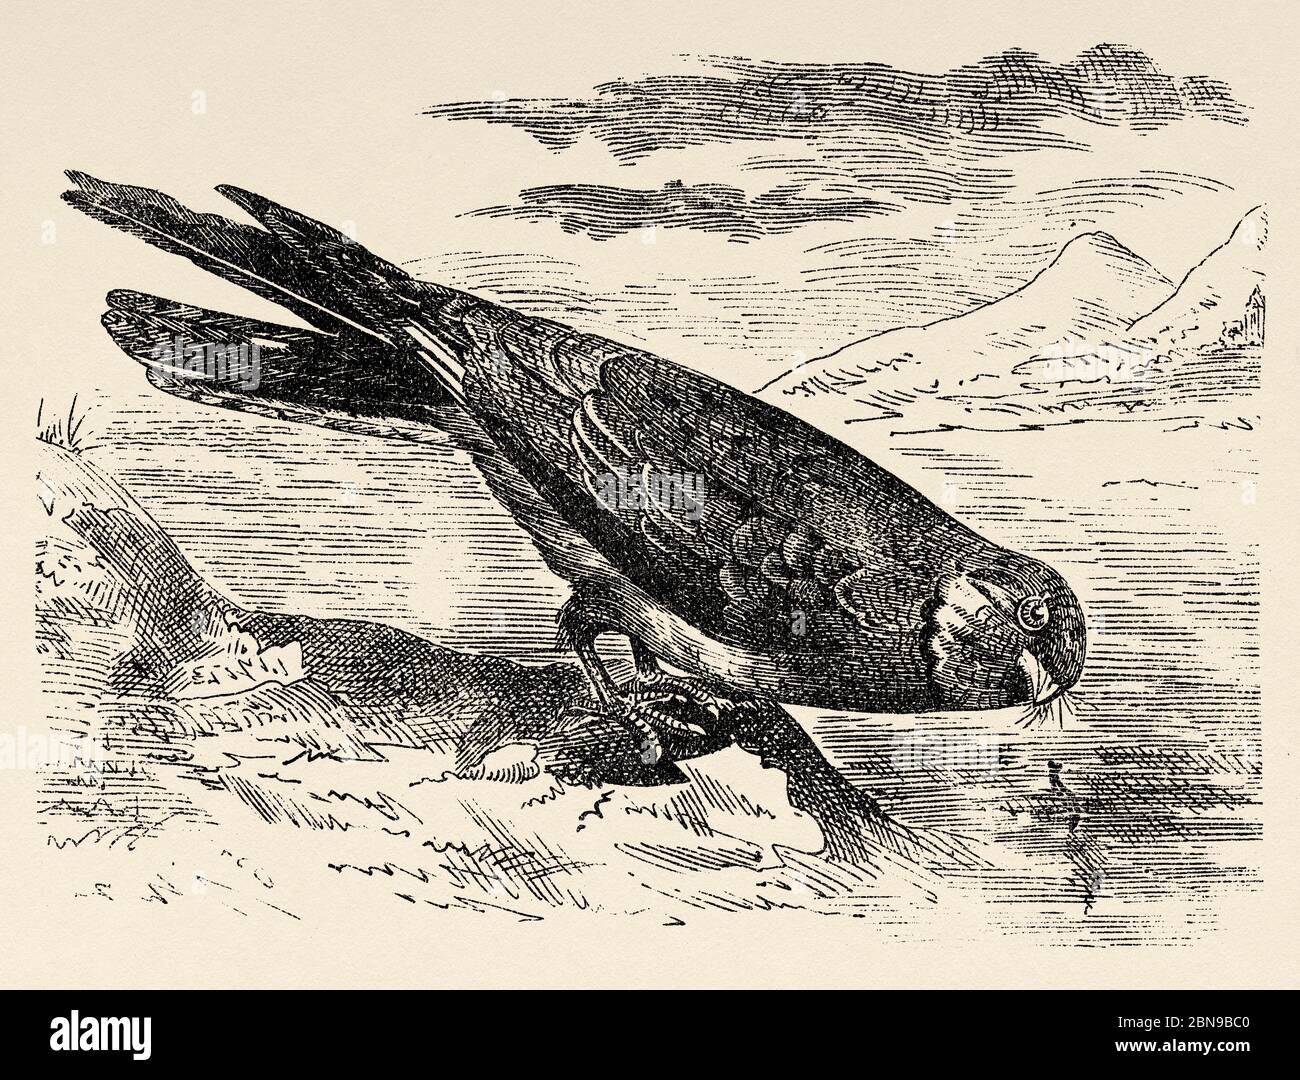 La añapero ñacundá specie di uccelli caprimulgiformi del genere Chordeiles che integra la famiglia dei Caprimulgidae di abitudini notturne. Antica illustrazione animale incisa 19 ° secolo Foto Stock